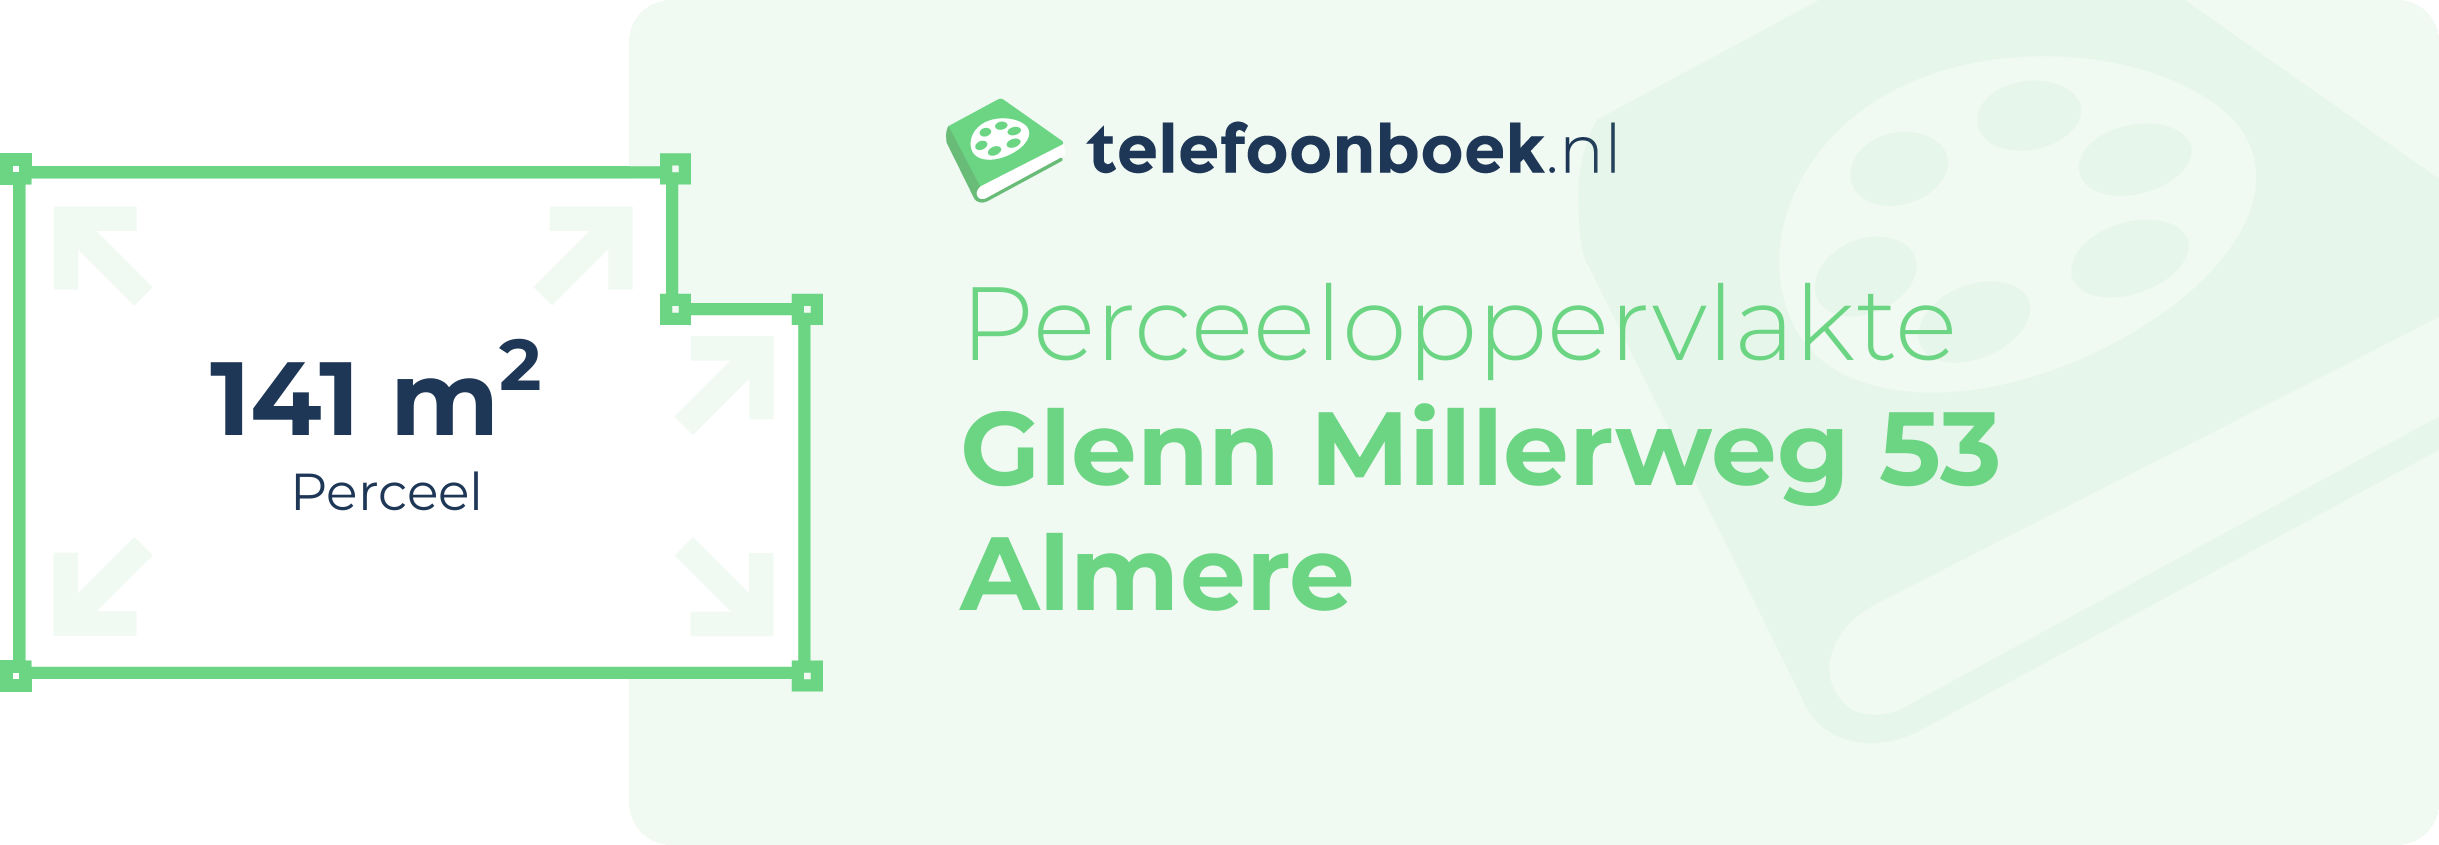 Perceeloppervlakte Glenn Millerweg 53 Almere